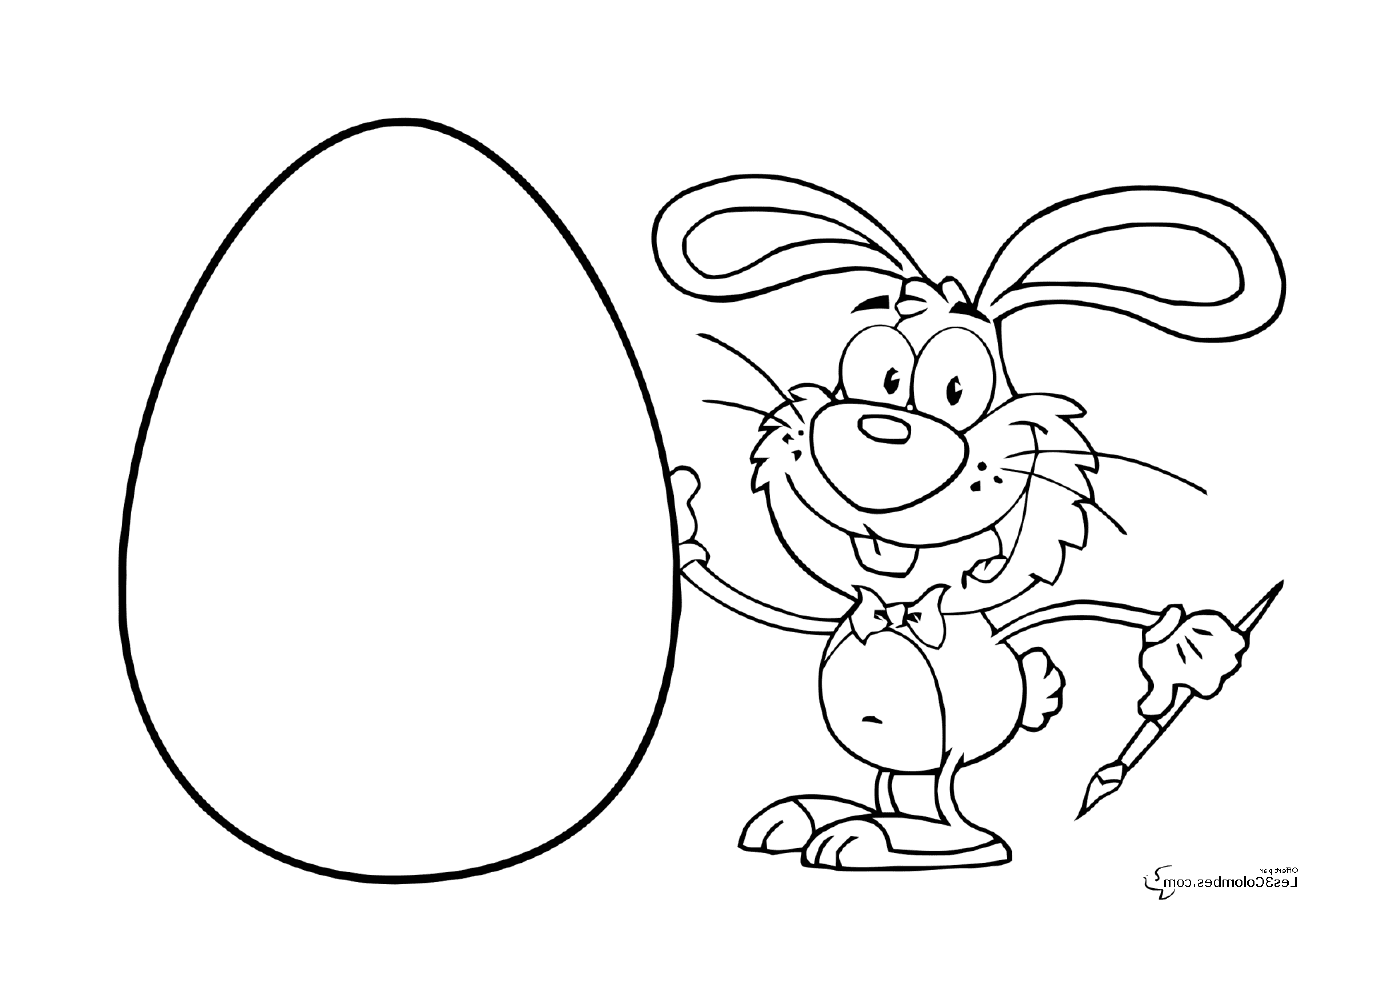  An Easter rabbit holding an egg 